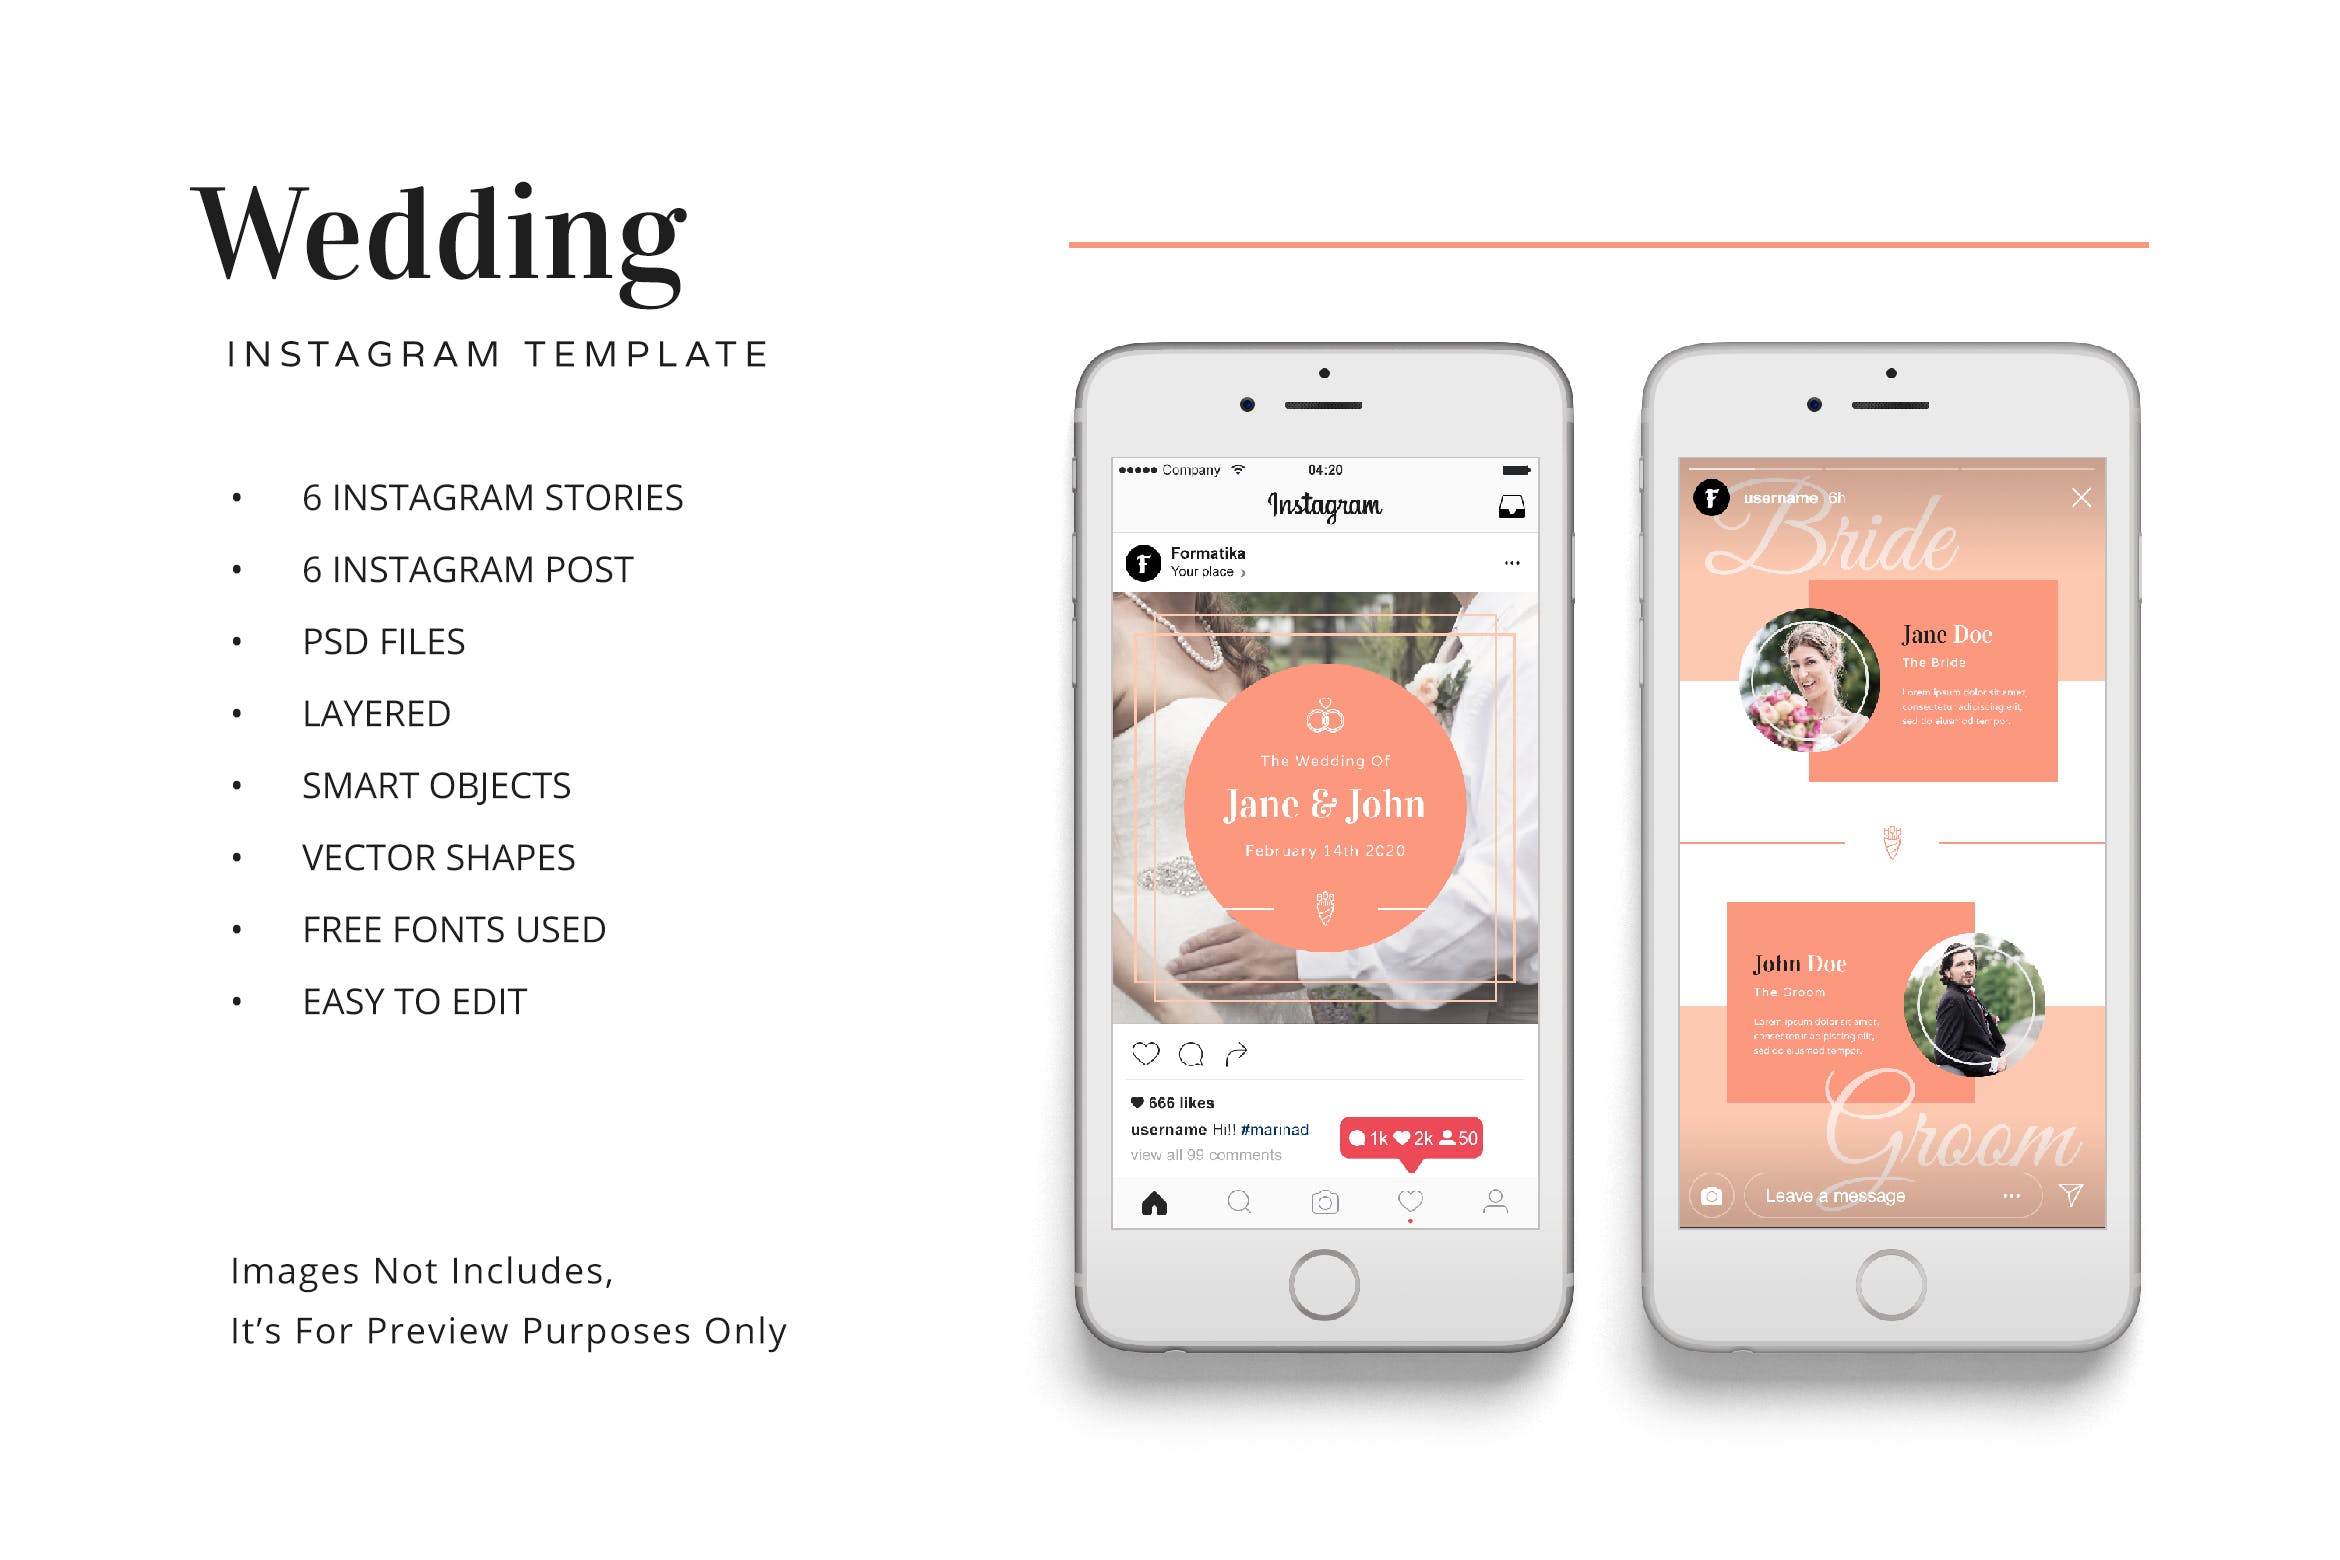 婚礼婚宴Instagram社交邀请函设计模板蚂蚁素材精选 Wedding Instagram Kit Template插图